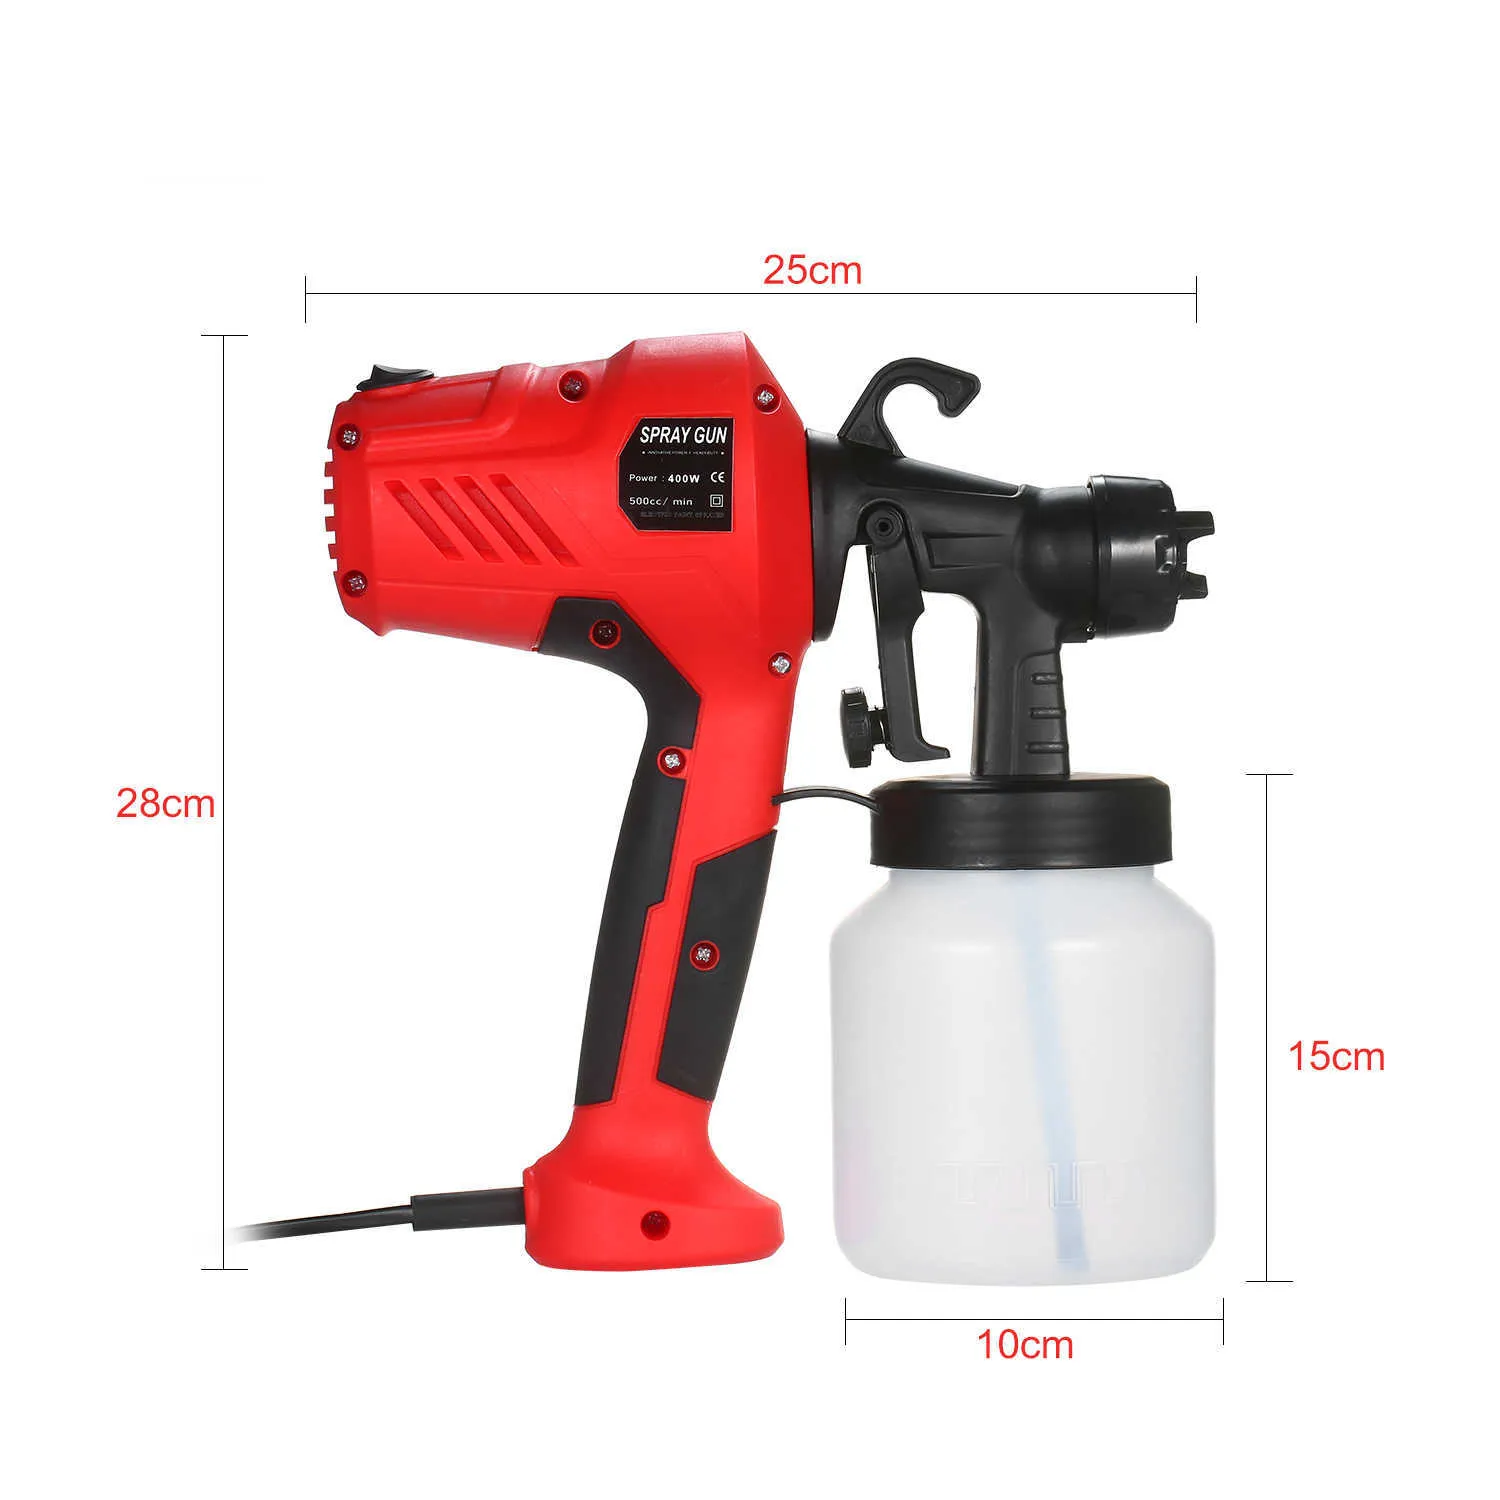 Electric Paint Sprayler Wyjmowany pod wysokim ciśnieniem pistoletu rozpylającym regulację przepływu powietrza i przepływu farby Euuk Airbrush 2107195323892